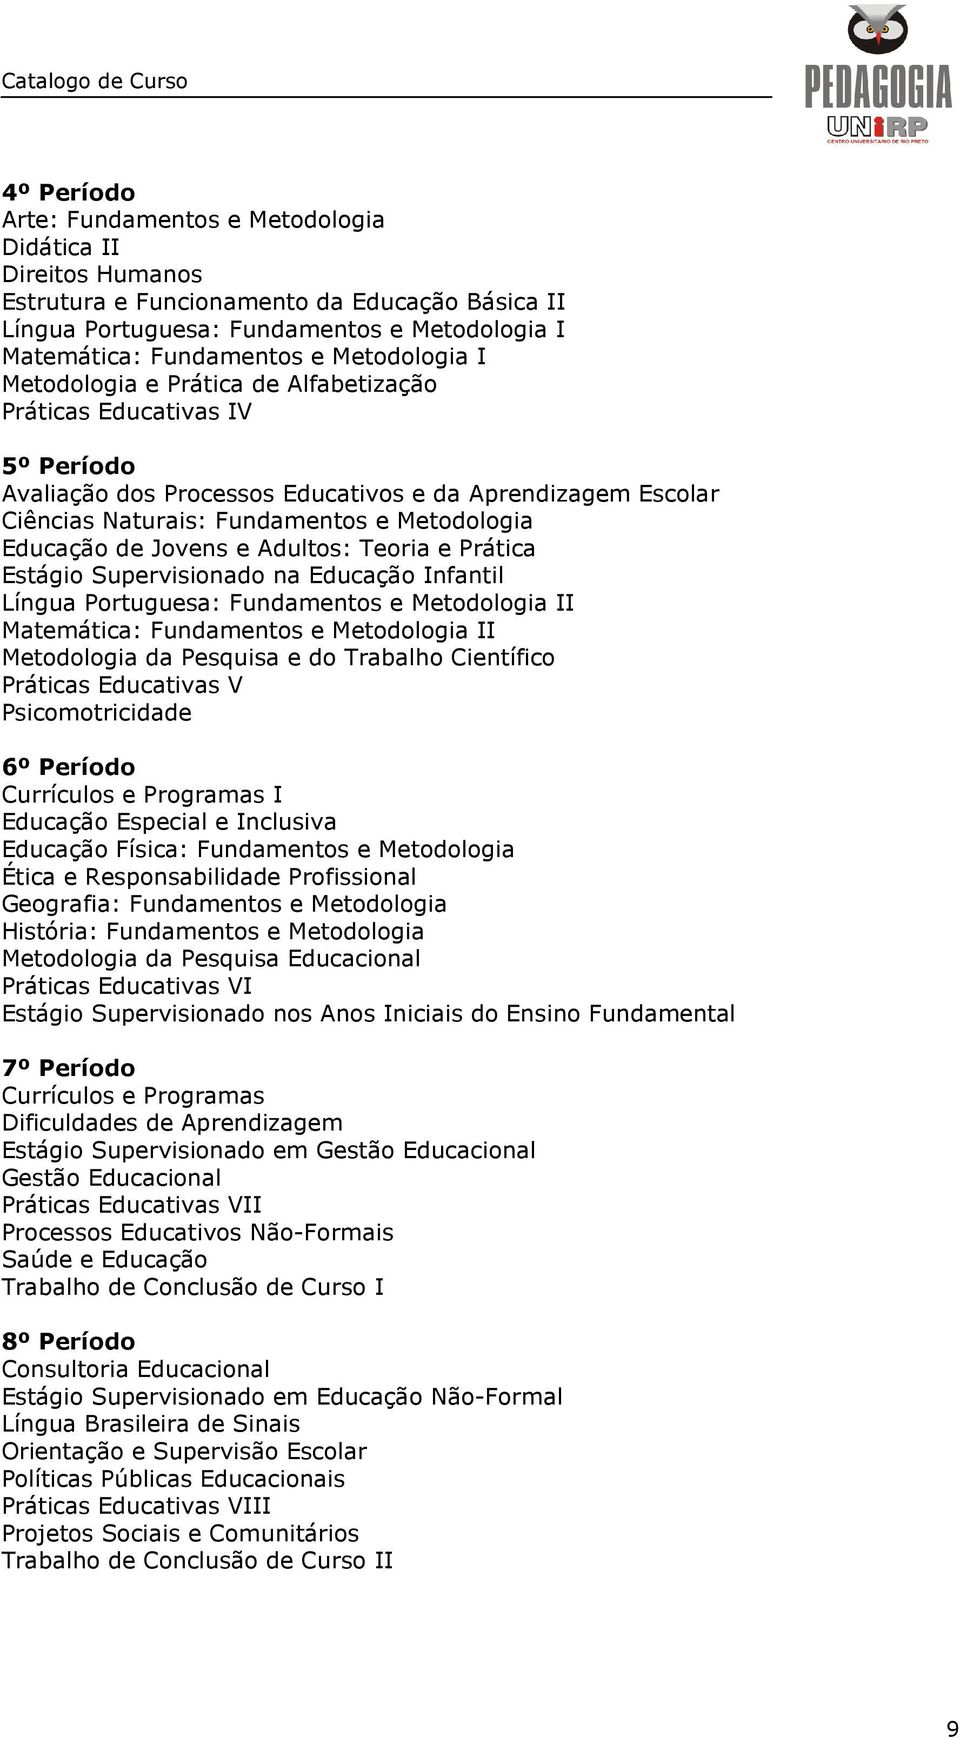 Educação de Jovens e Adultos: Teoria e Prática Estágio Supervisionado na Educação Infantil Língua Portuguesa: Fundamentos e Metodologia II Matemática: Fundamentos e Metodologia II Metodologia da